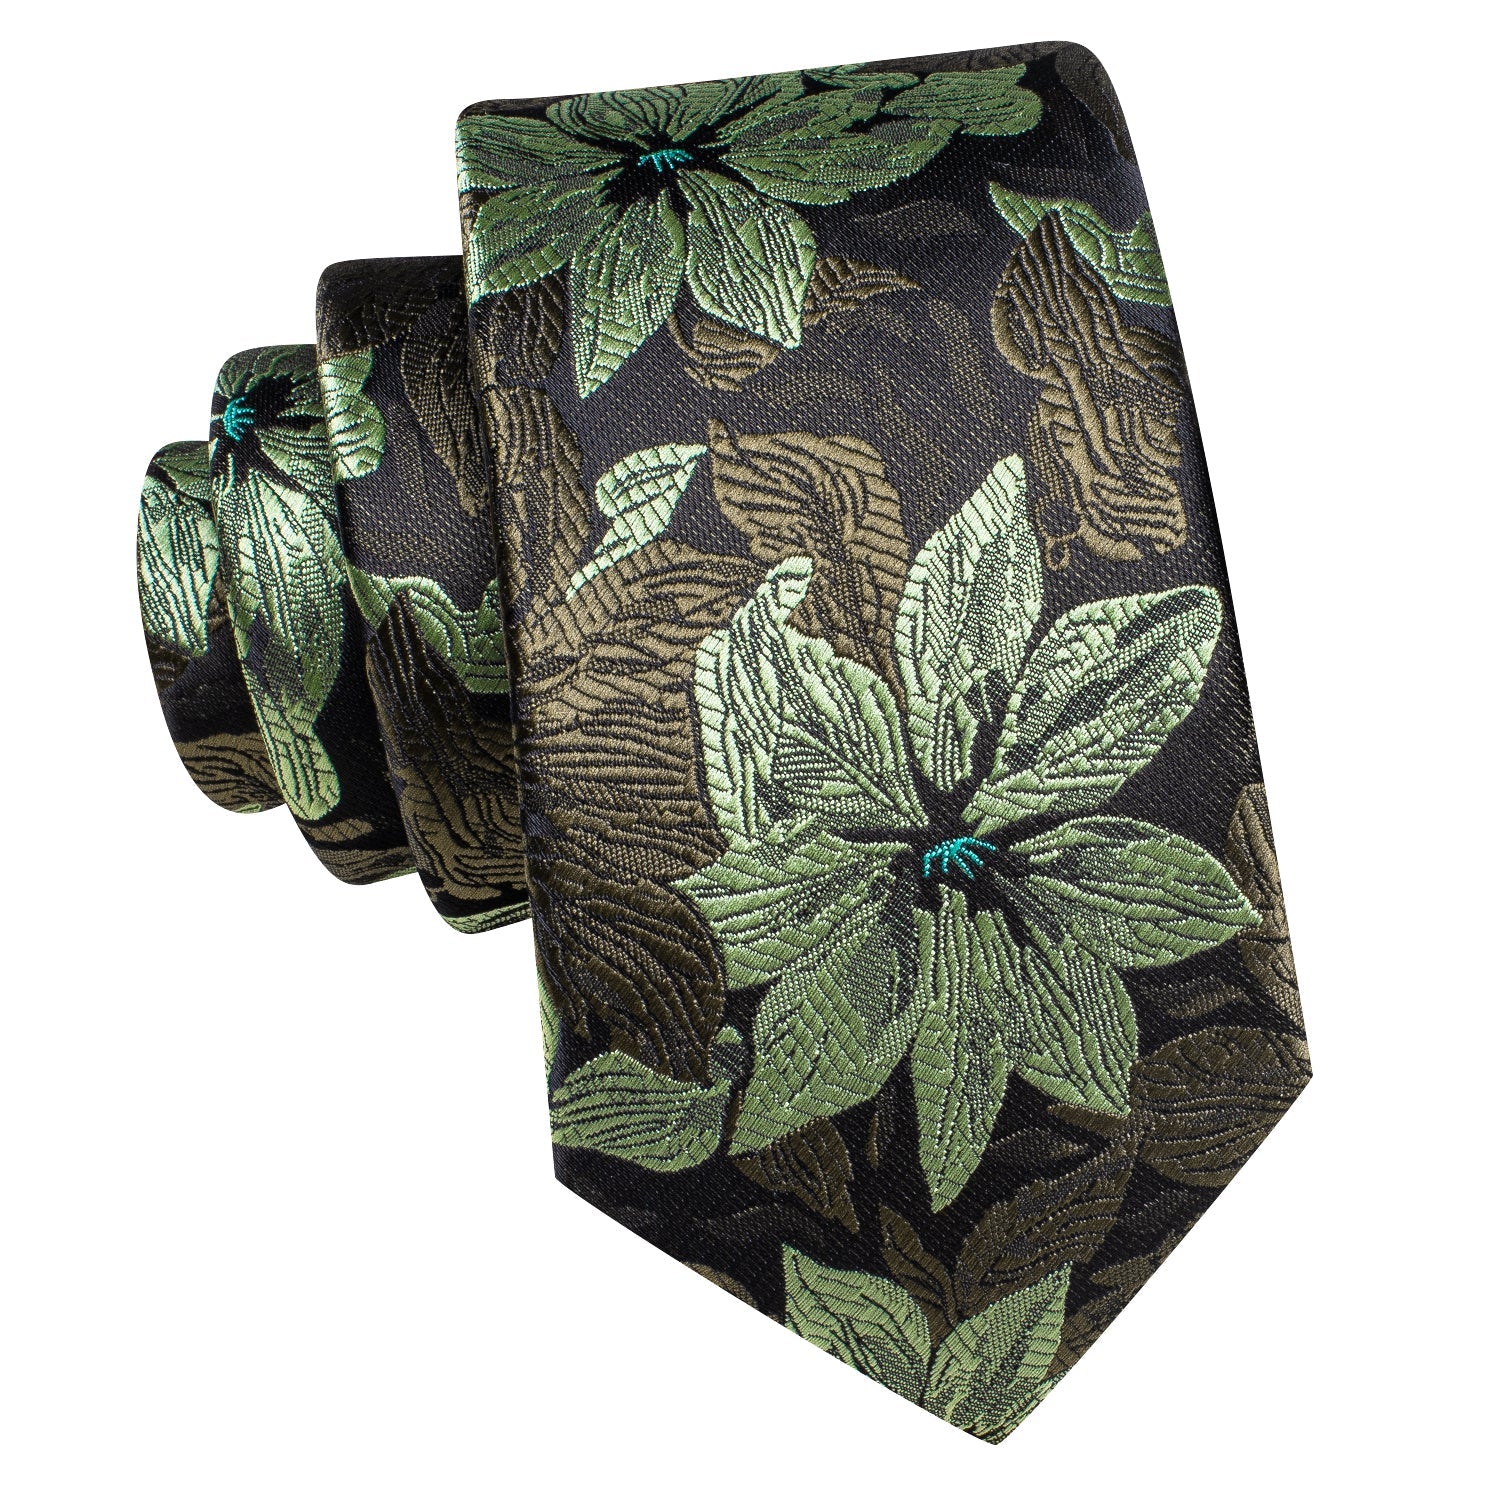 Necktie Black Green Floral Men Tie Pocket Square Cufflinks Set